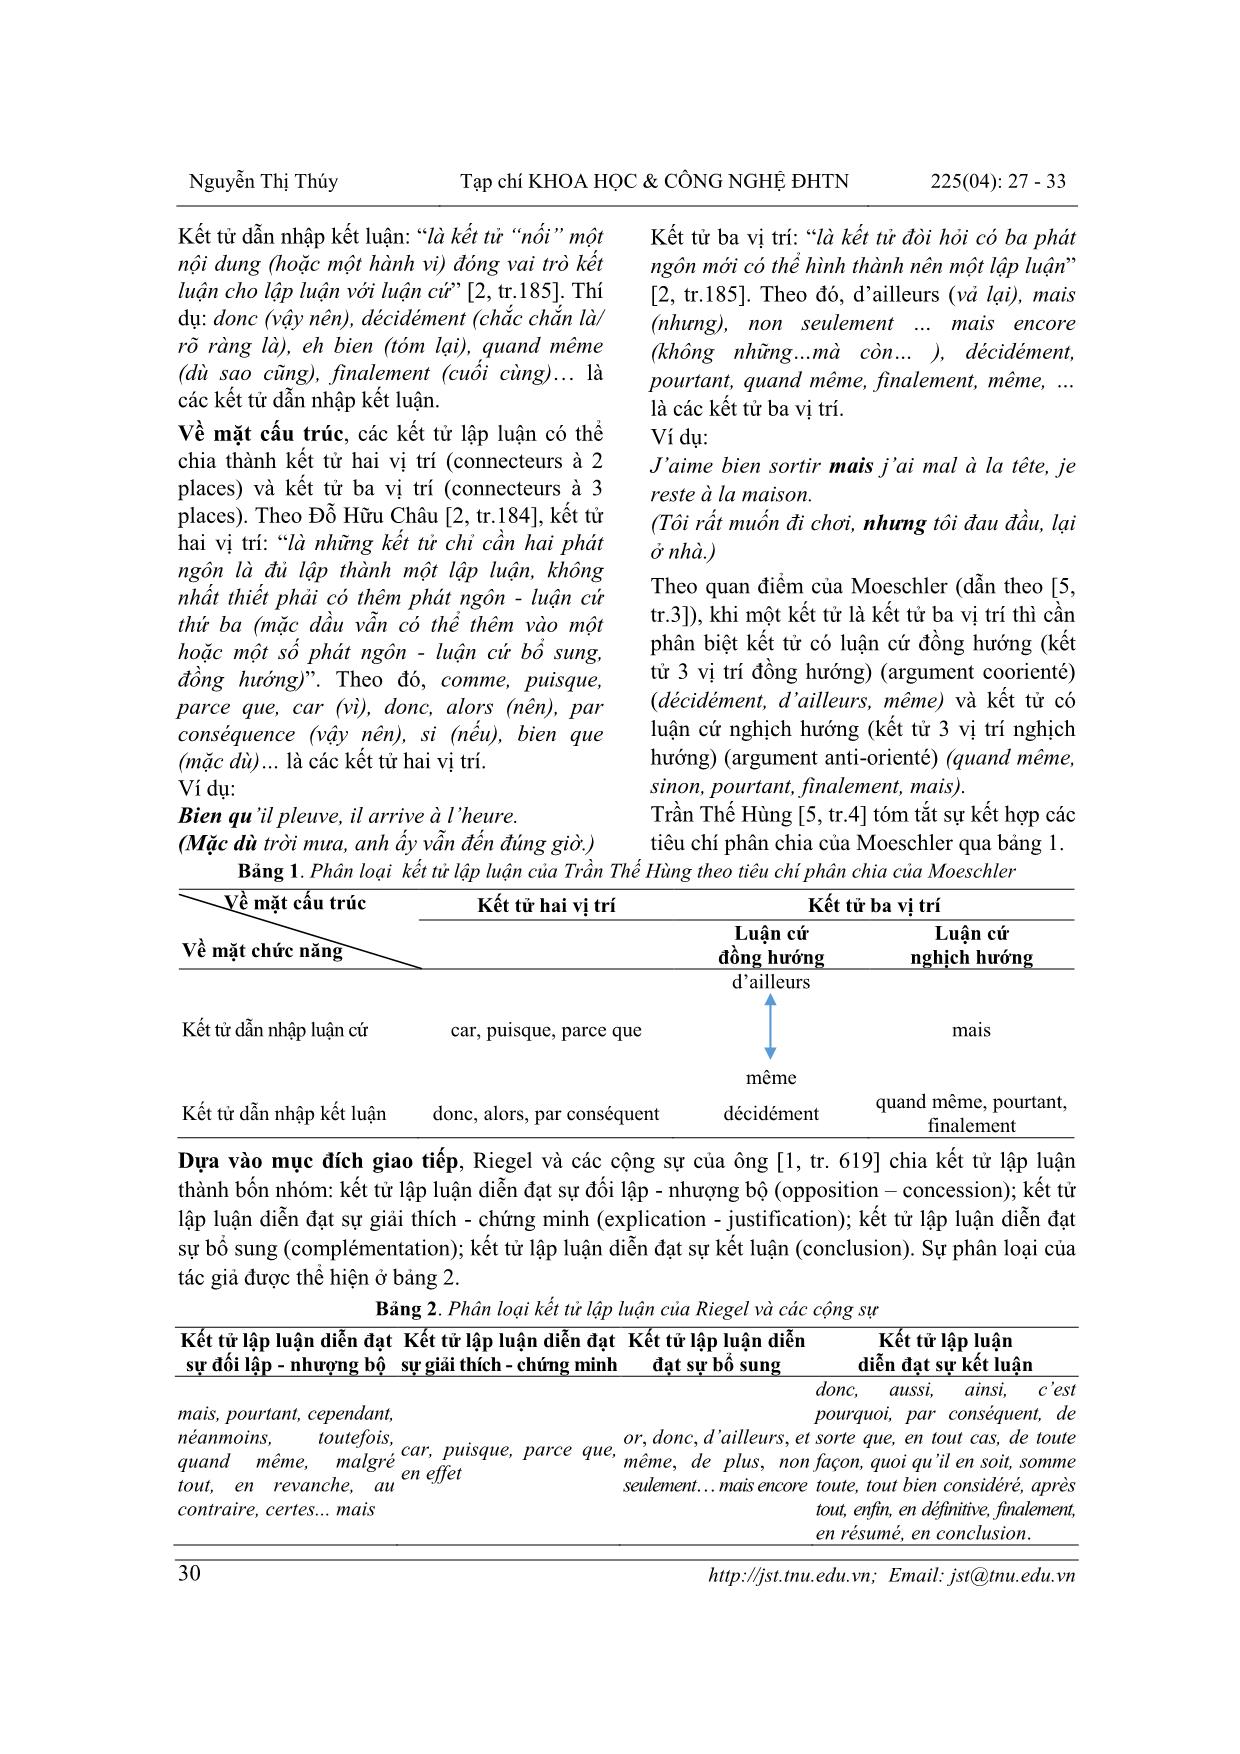 Dạy các kết tử lập luận trong tiếng Pháp cho sinh viên khoa Ngoại ngữ - Đại học Thái Nguyên trang 4